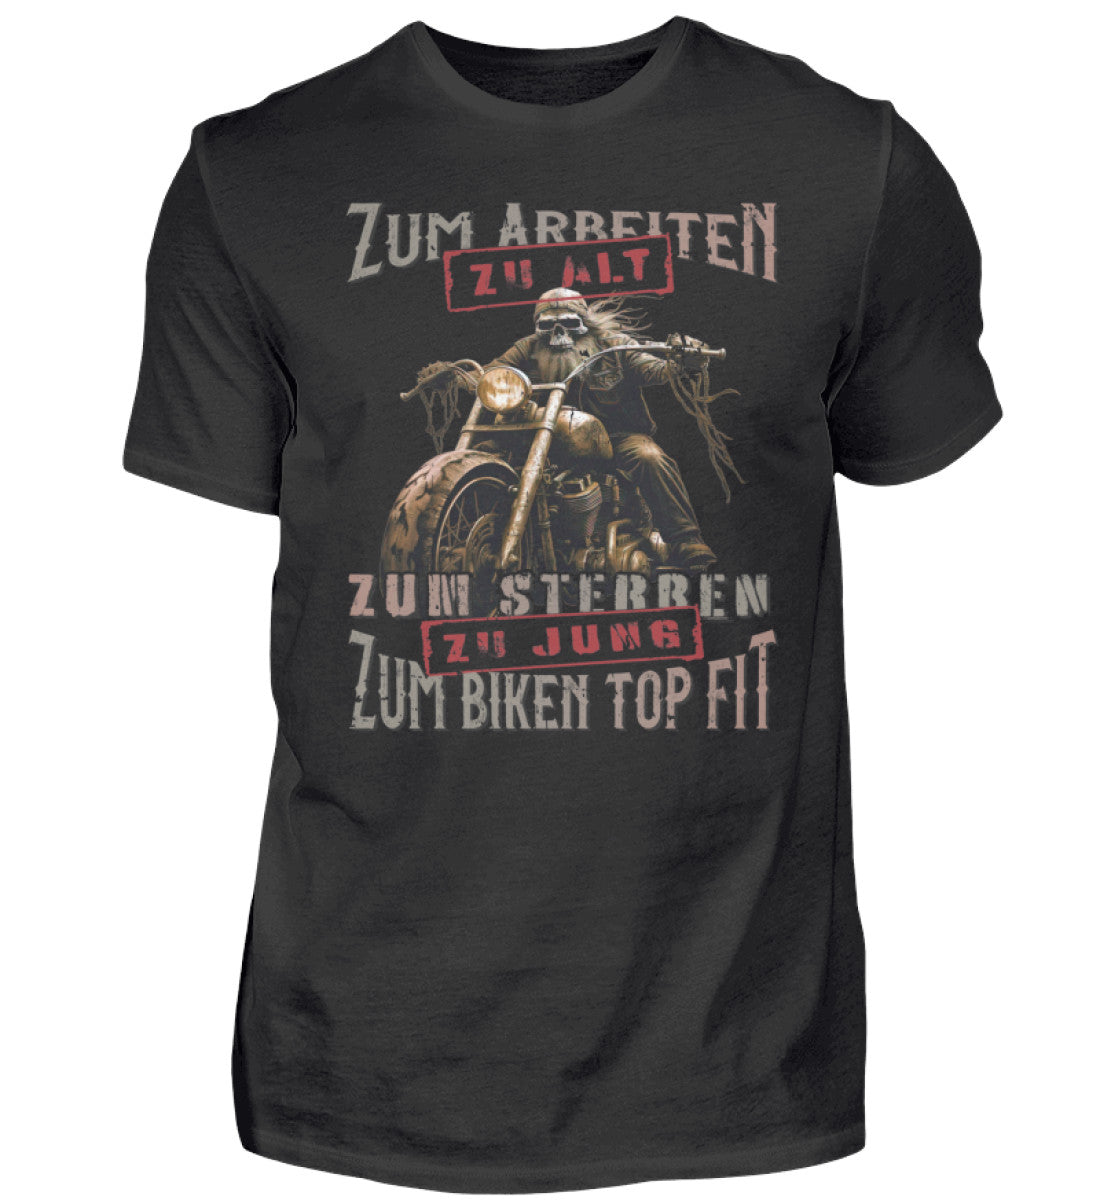 Ein Biker T-Shirt für Motorradfahrer von Wingbikers mit dem Aufdruck, Zum Arbeiten zu alt, zum Sterben zu jung - Zum Biken top fit- in schwarz.